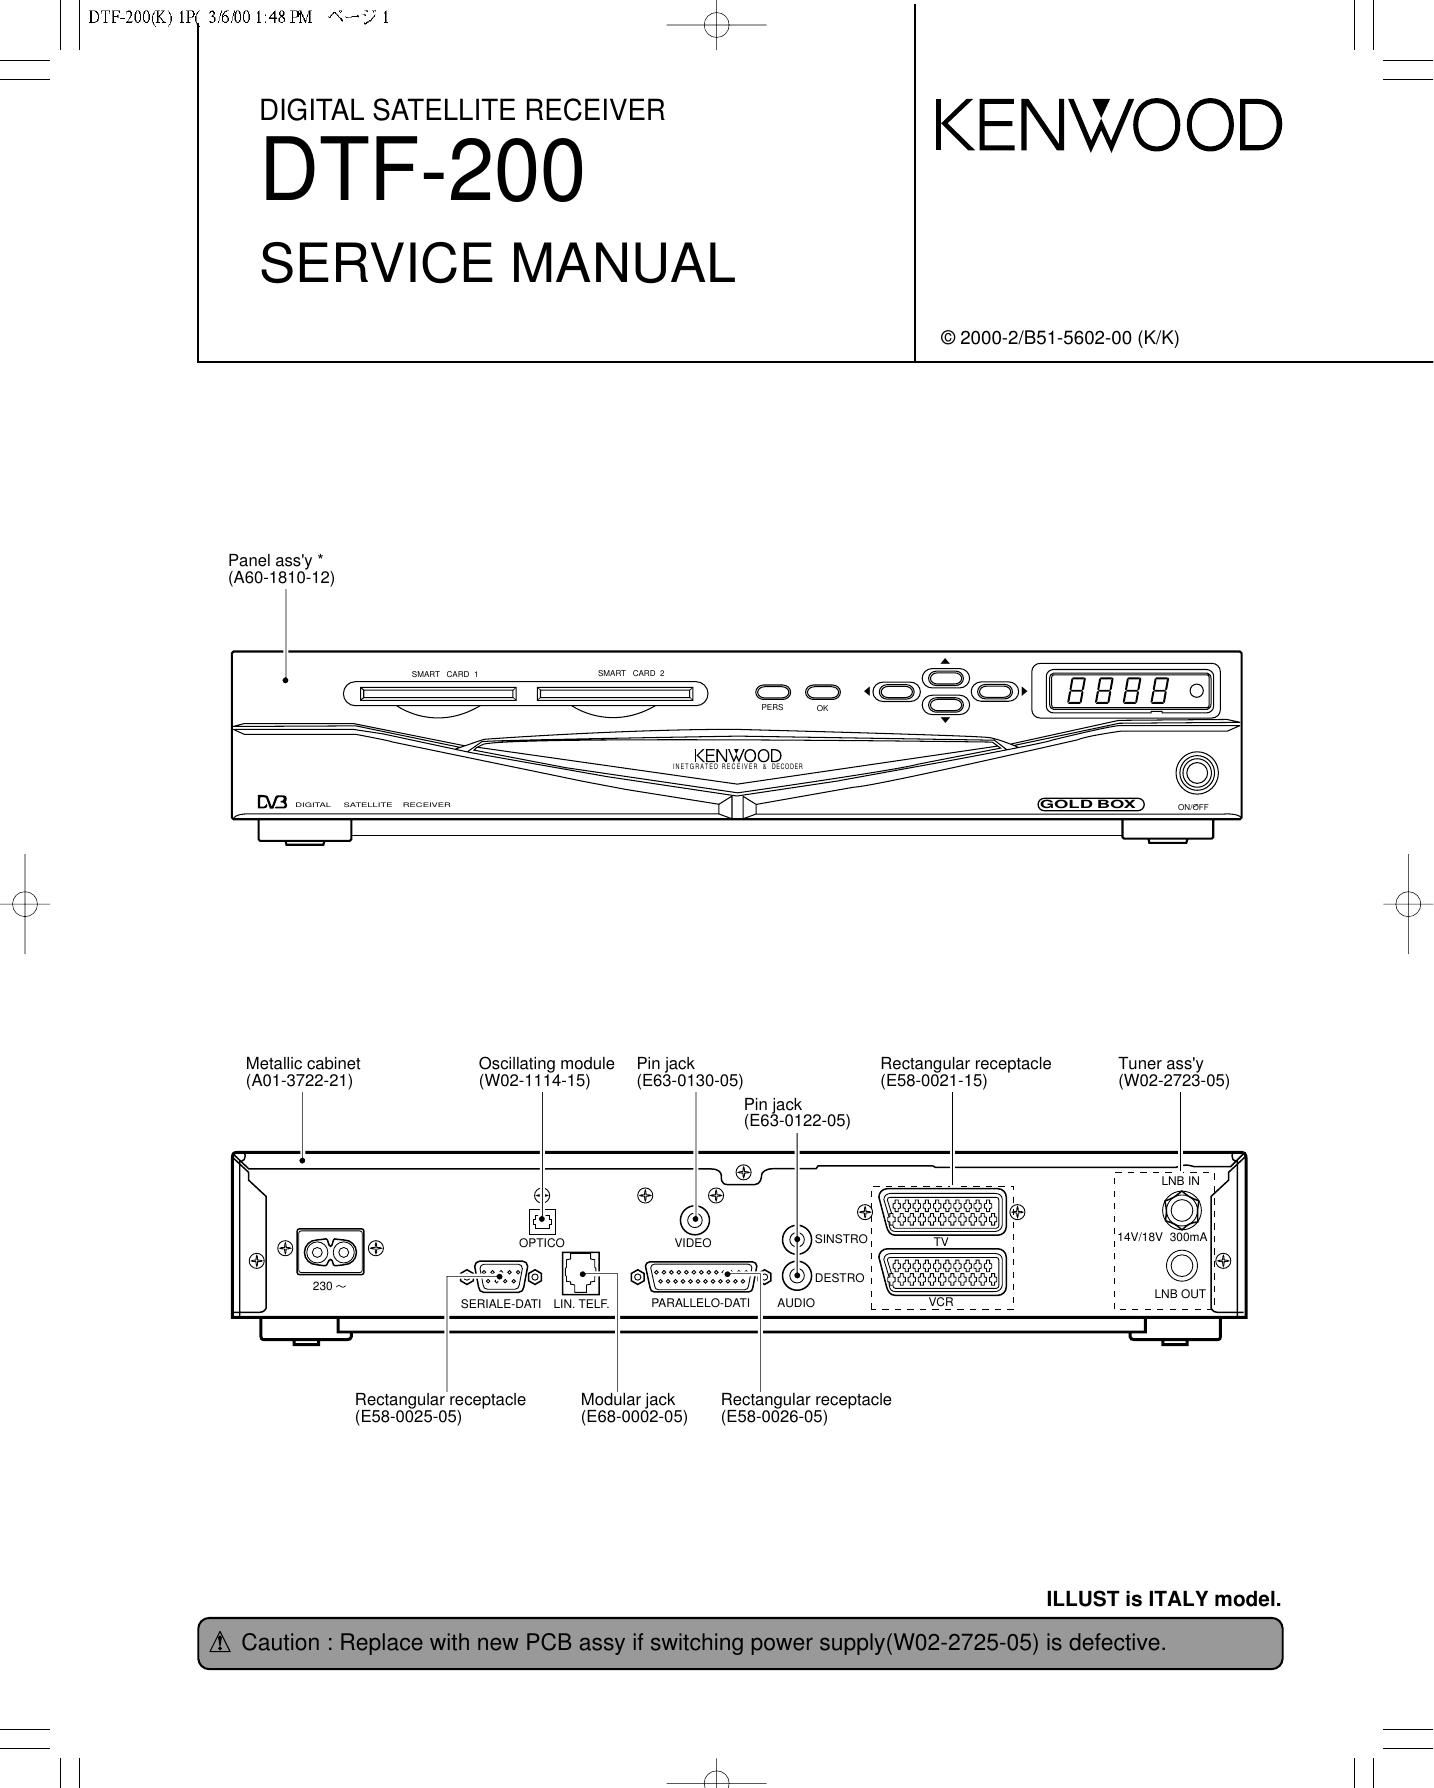 Kenwood DTF 200 Service Manual